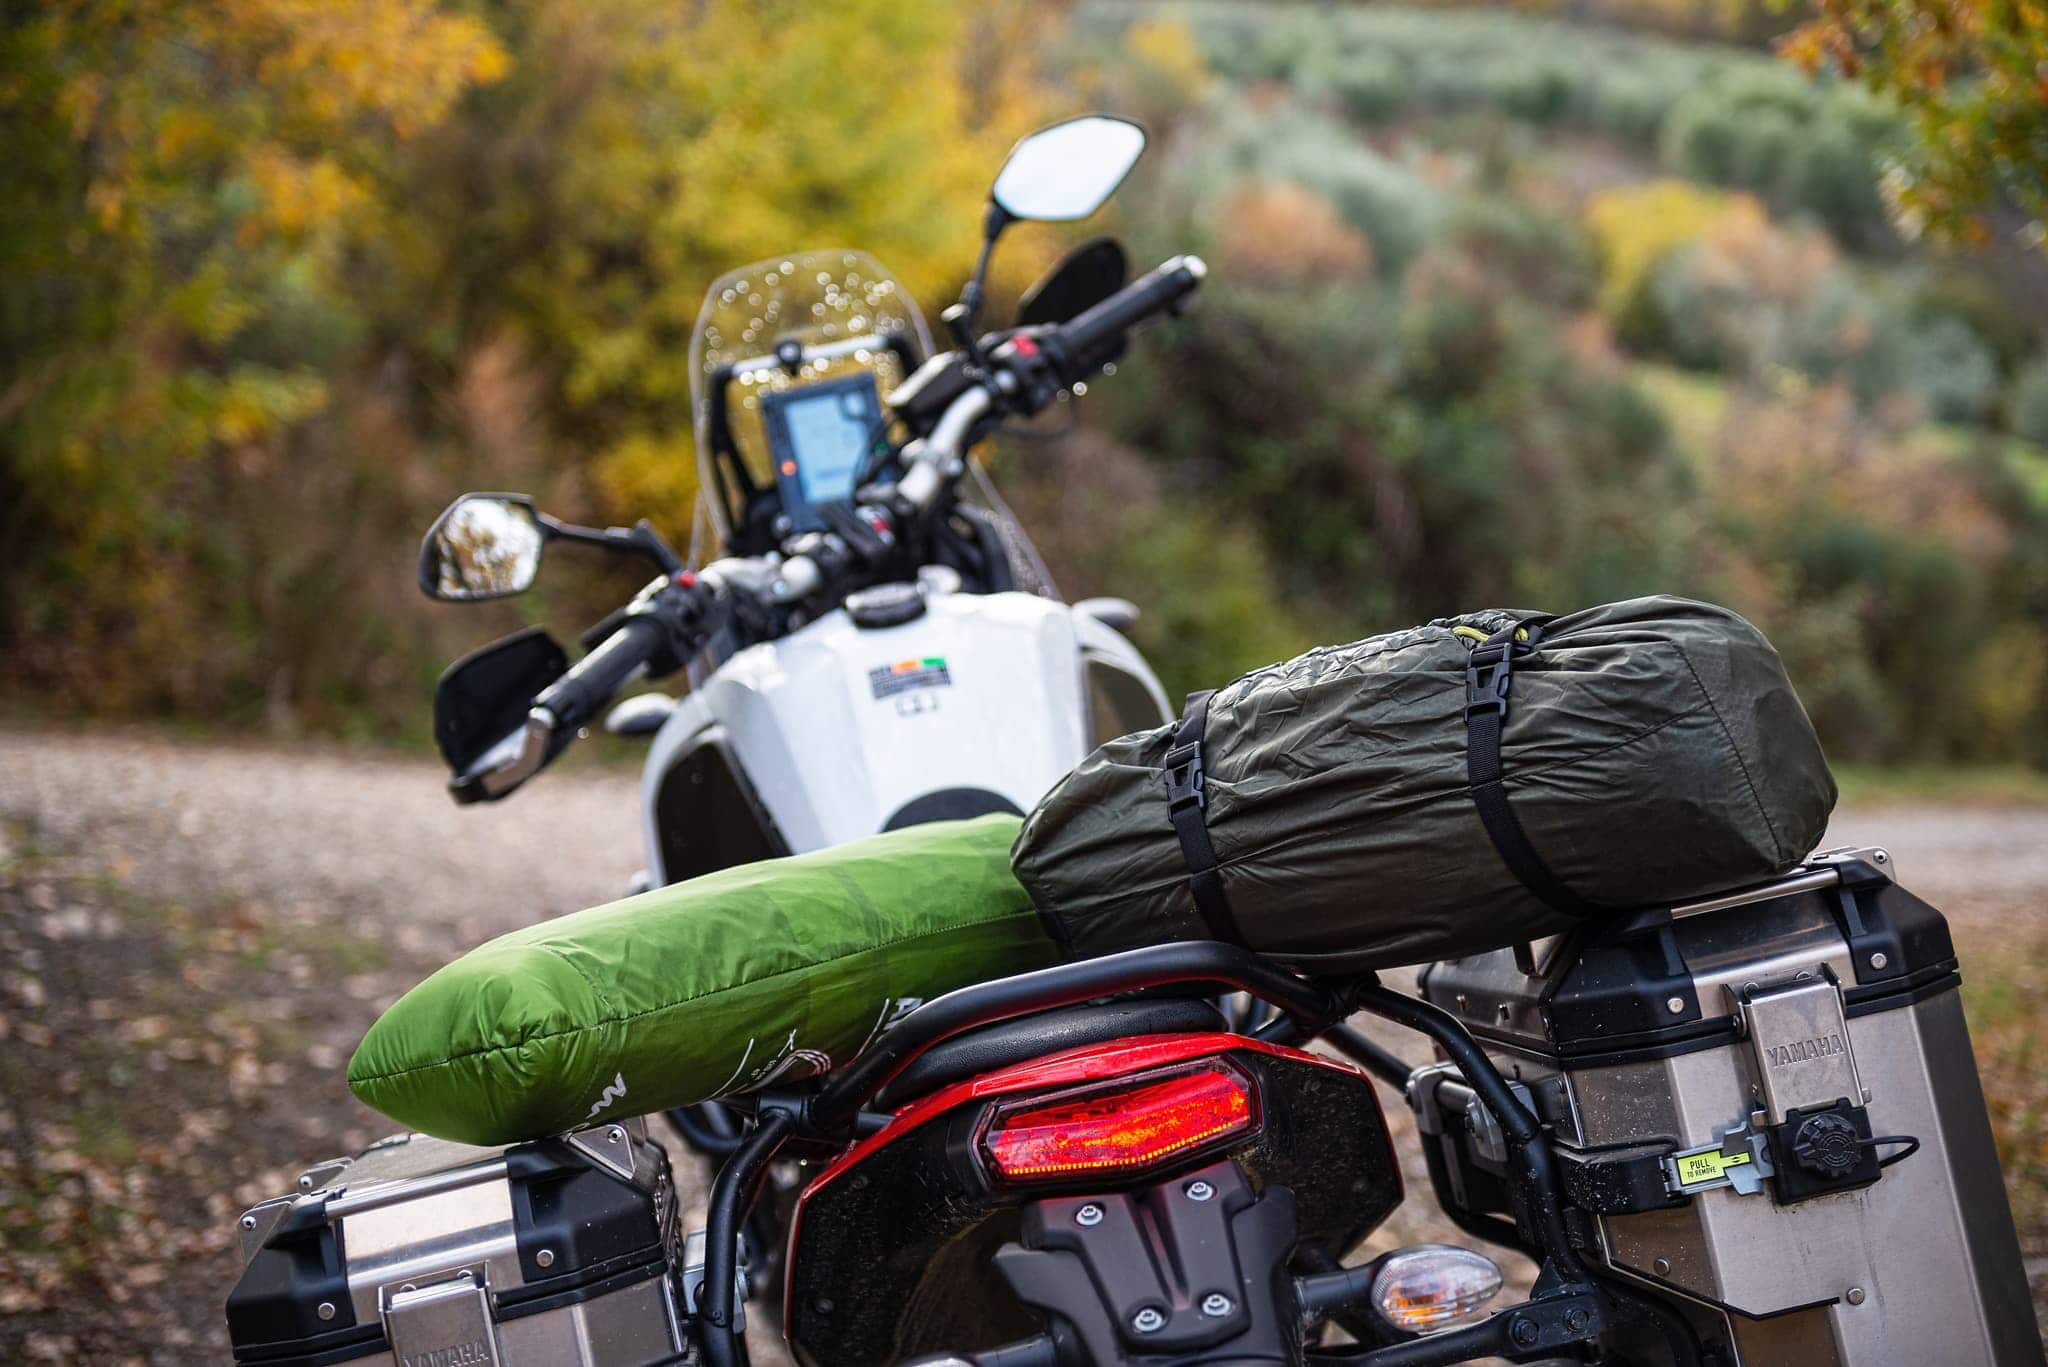 10 Motorrad Gadget-Ideen  motorrad, zeltausrüstung, campingprodukte